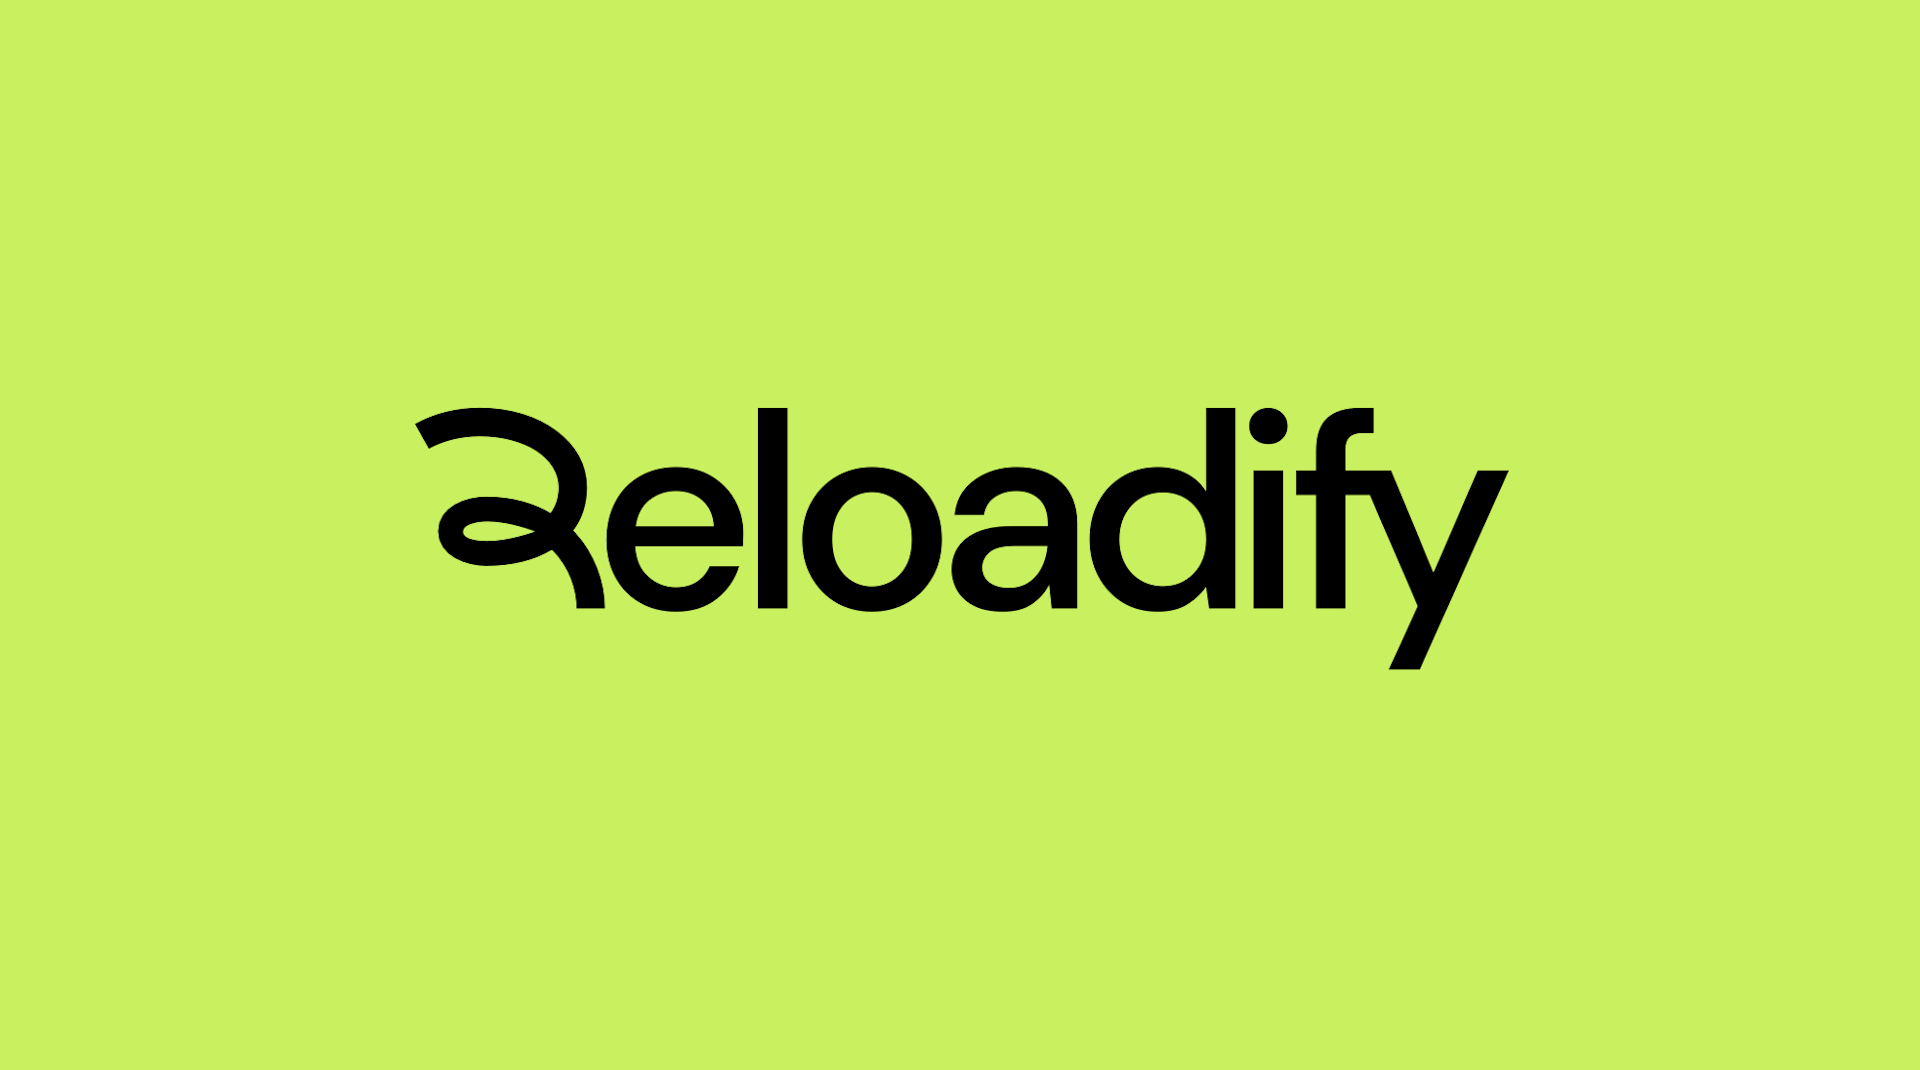 Reloadify green background